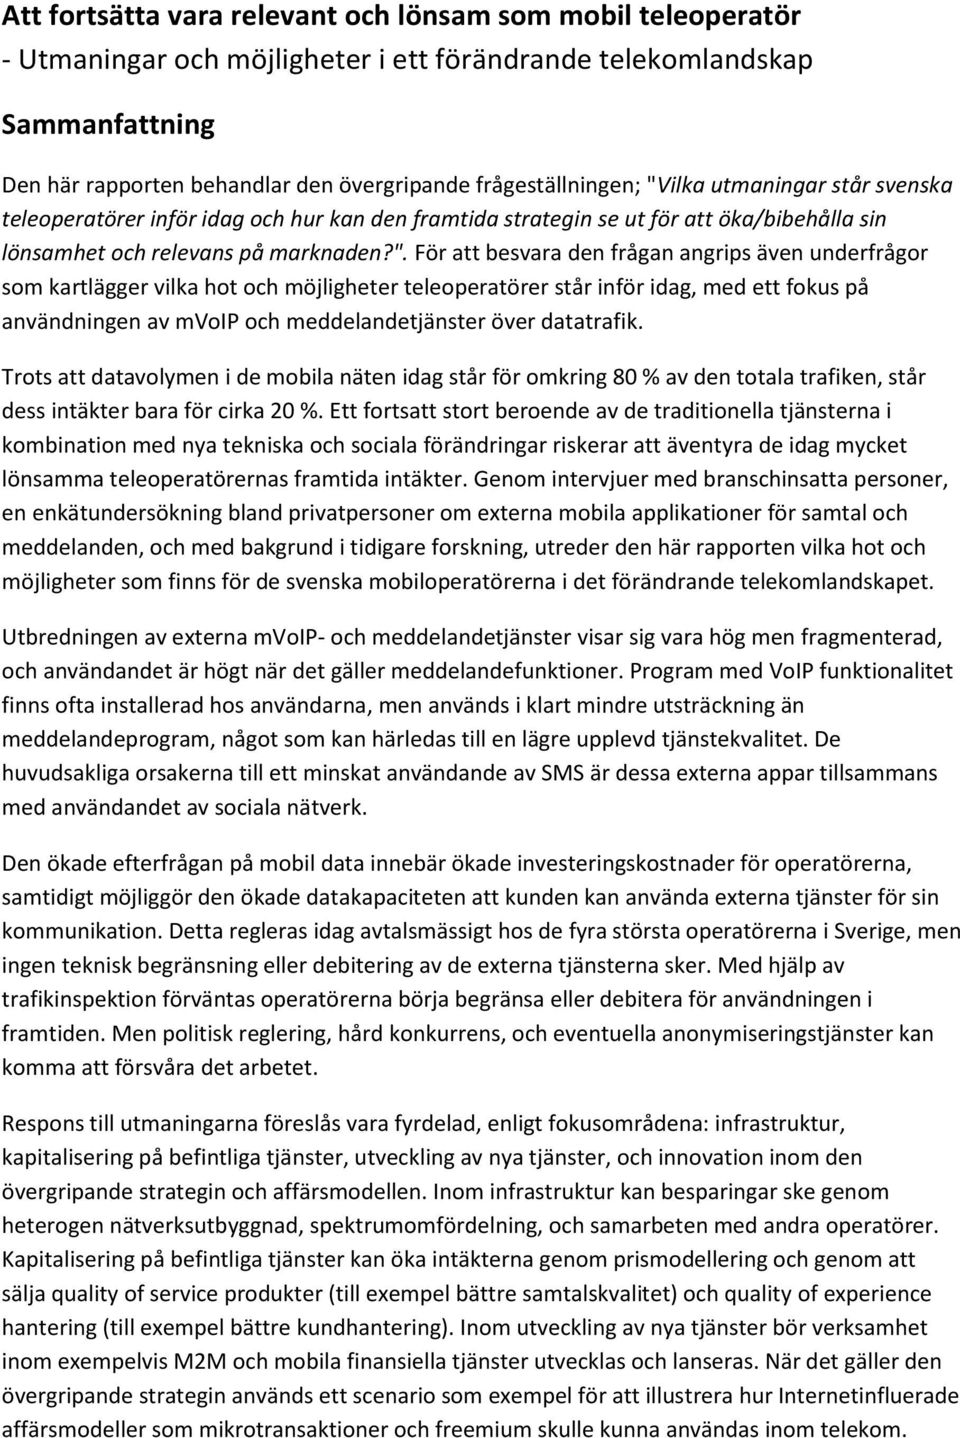 ilka utmaningar står svenska teleoperatörer inför idag och hur kan den framtida strategin se ut för att öka/bibehålla sin lönsamhet och relevans på marknaden?".